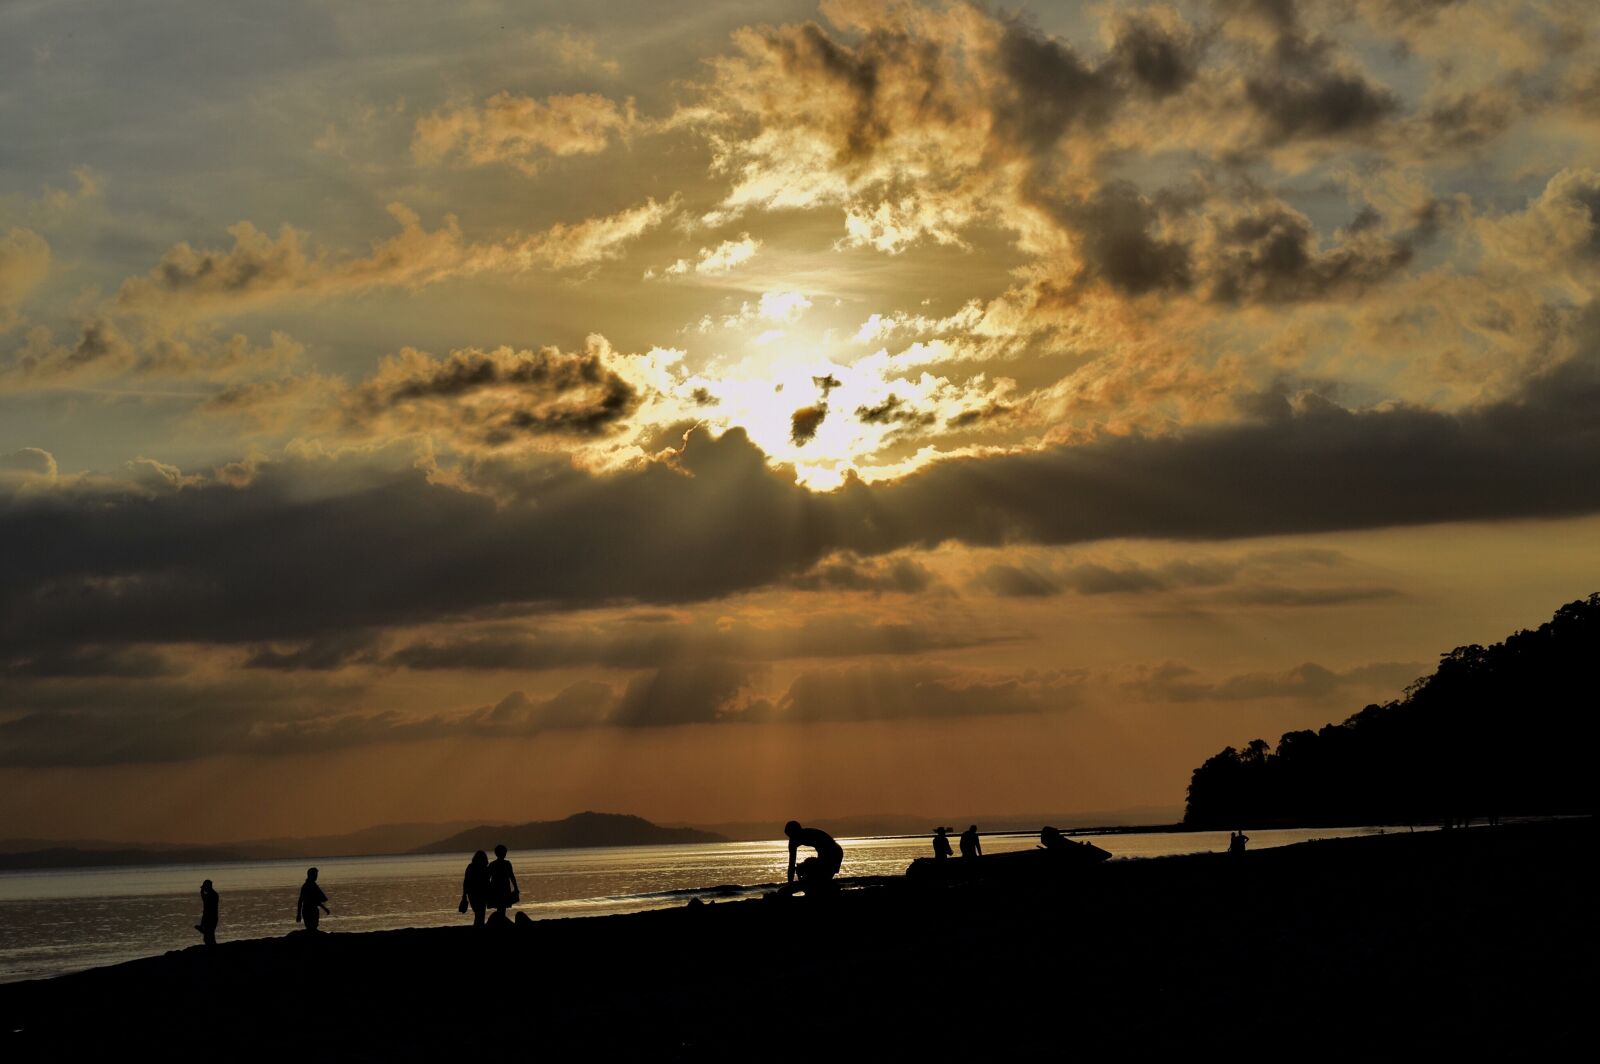 Nikon D3300 sample photo. Beach, evening, sun, nature photography